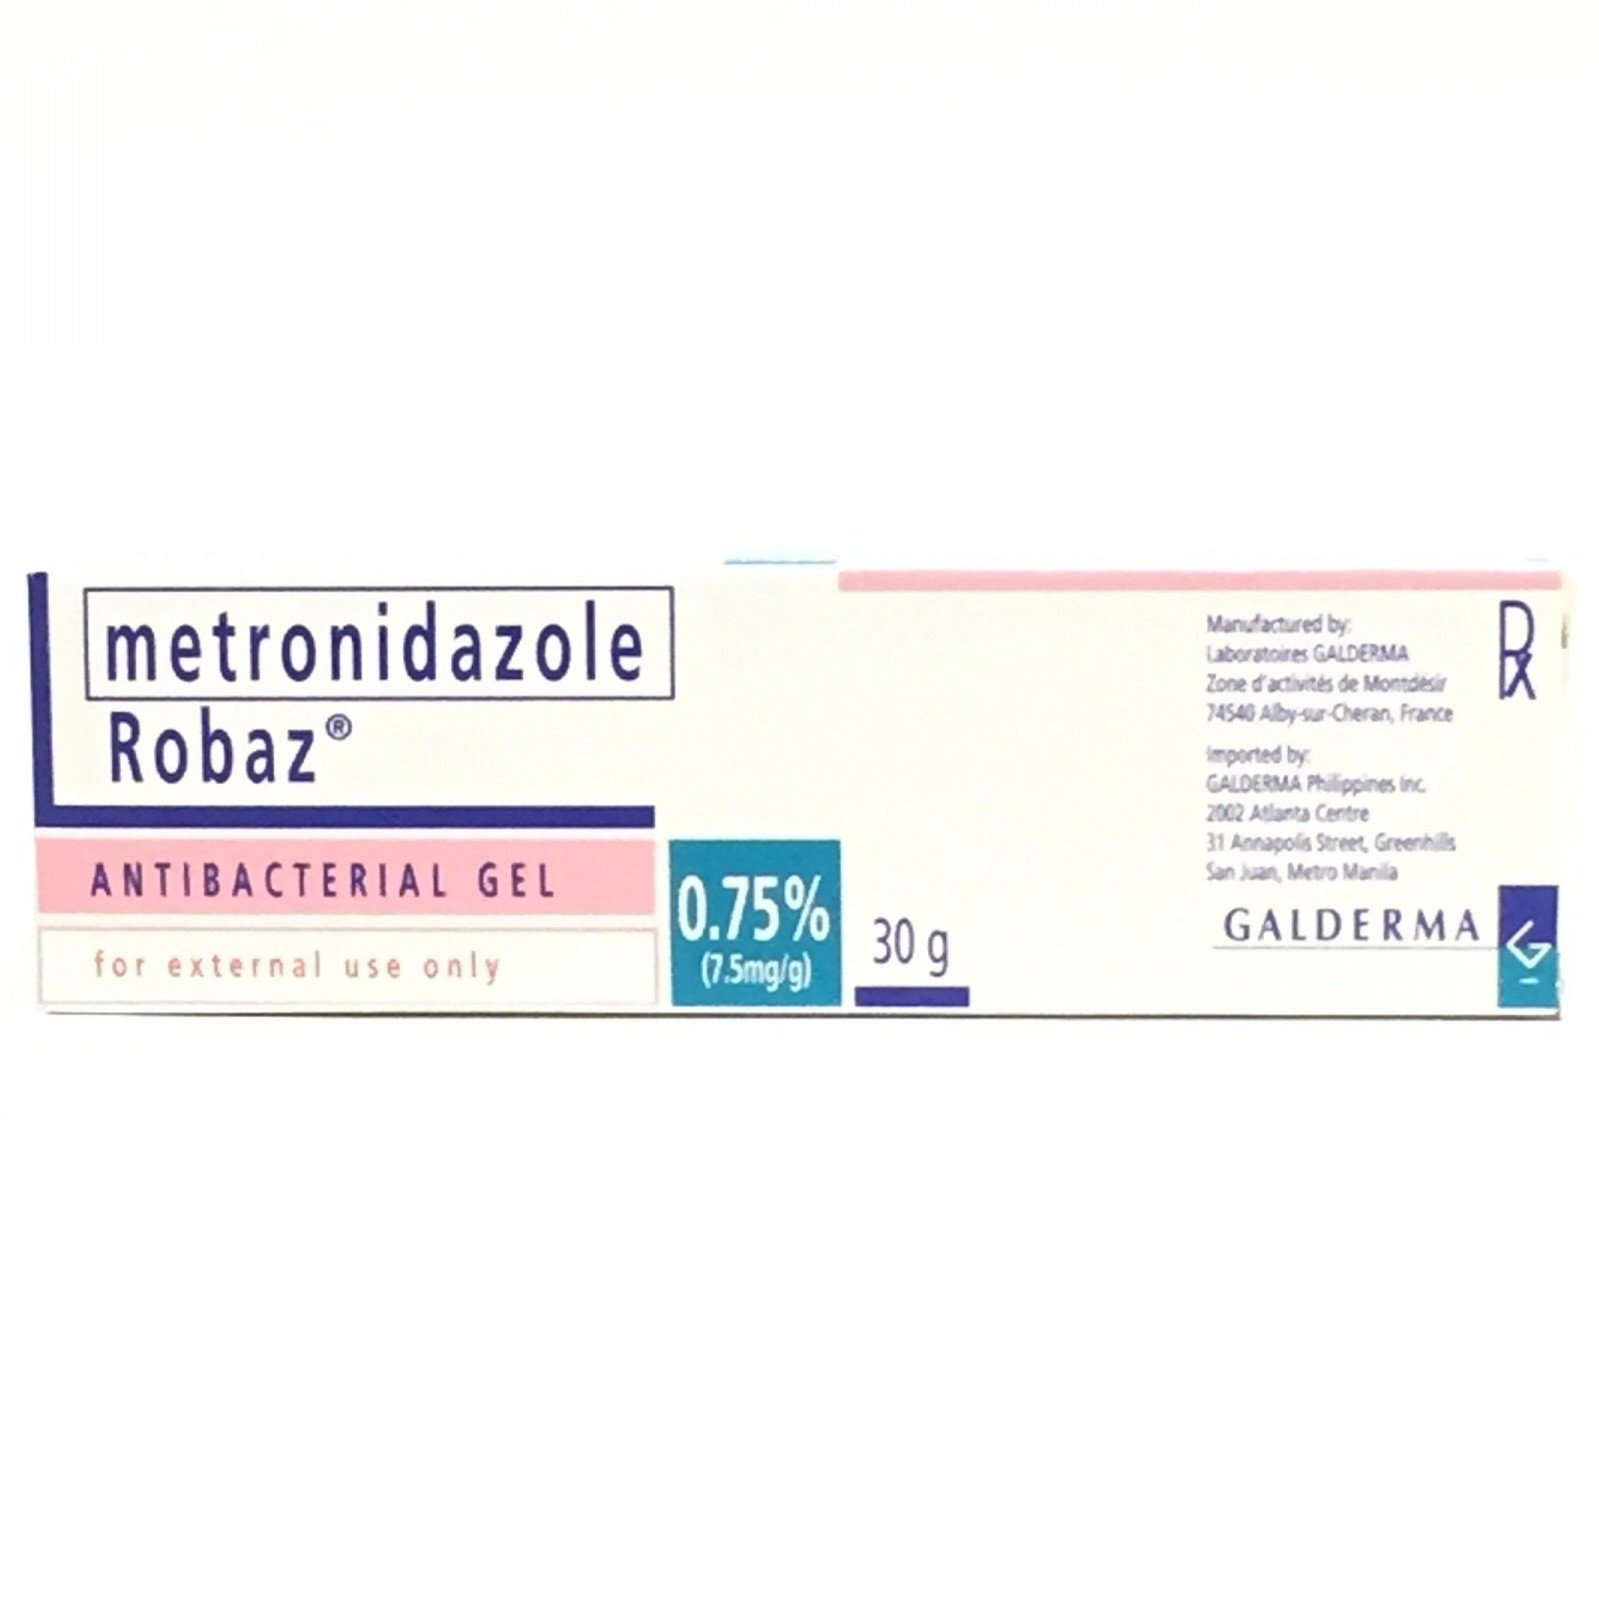 Metronidazole Robaz